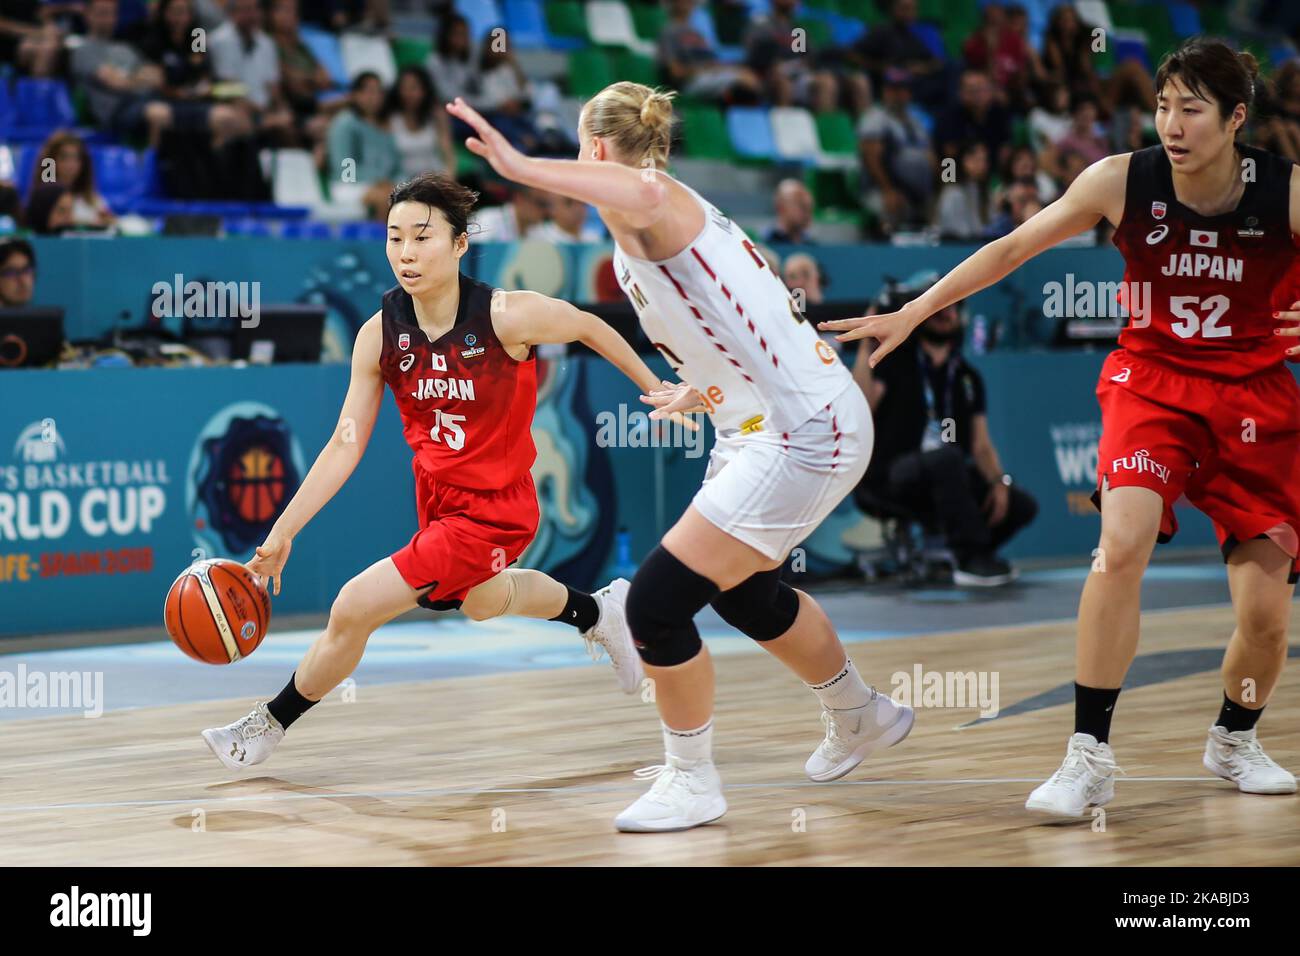 Espagne, Ténérife, 23 septembre 2018: Le joueur japonais de basket-ball Nako Motohashi en action pendant la coupe du monde de basket-ball féminin FIBA Banque D'Images